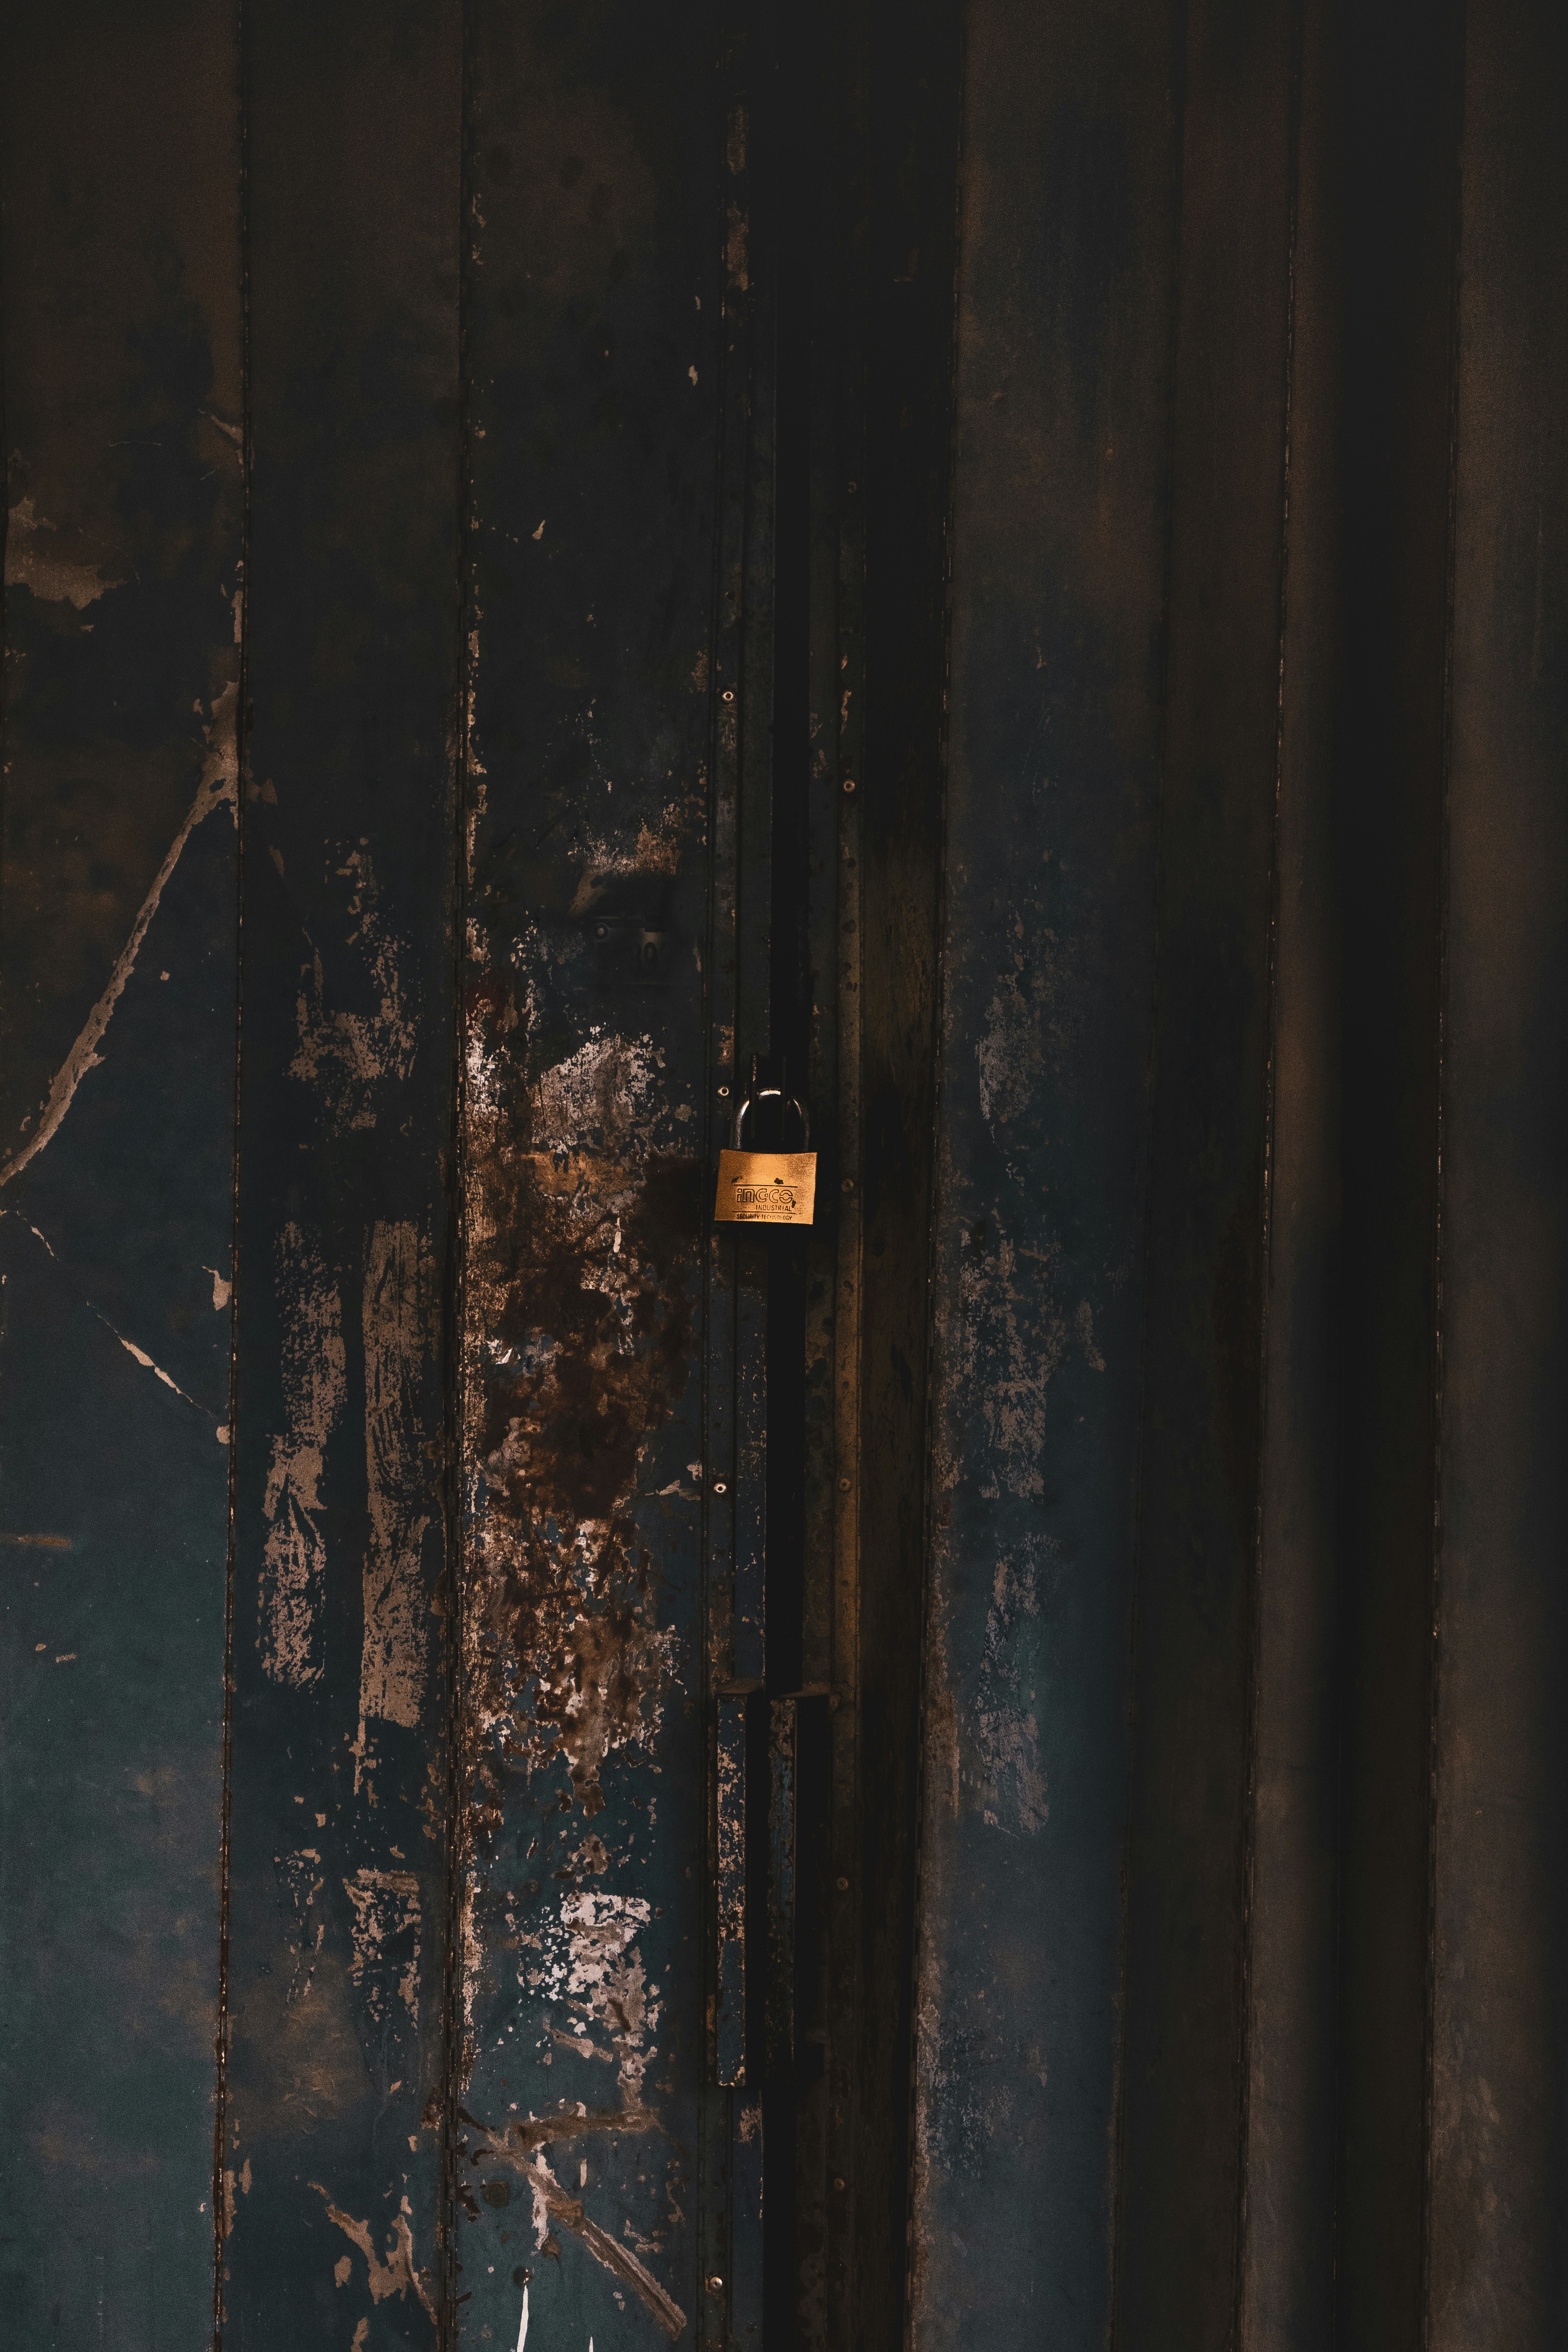 black and brown padlock on black metal door